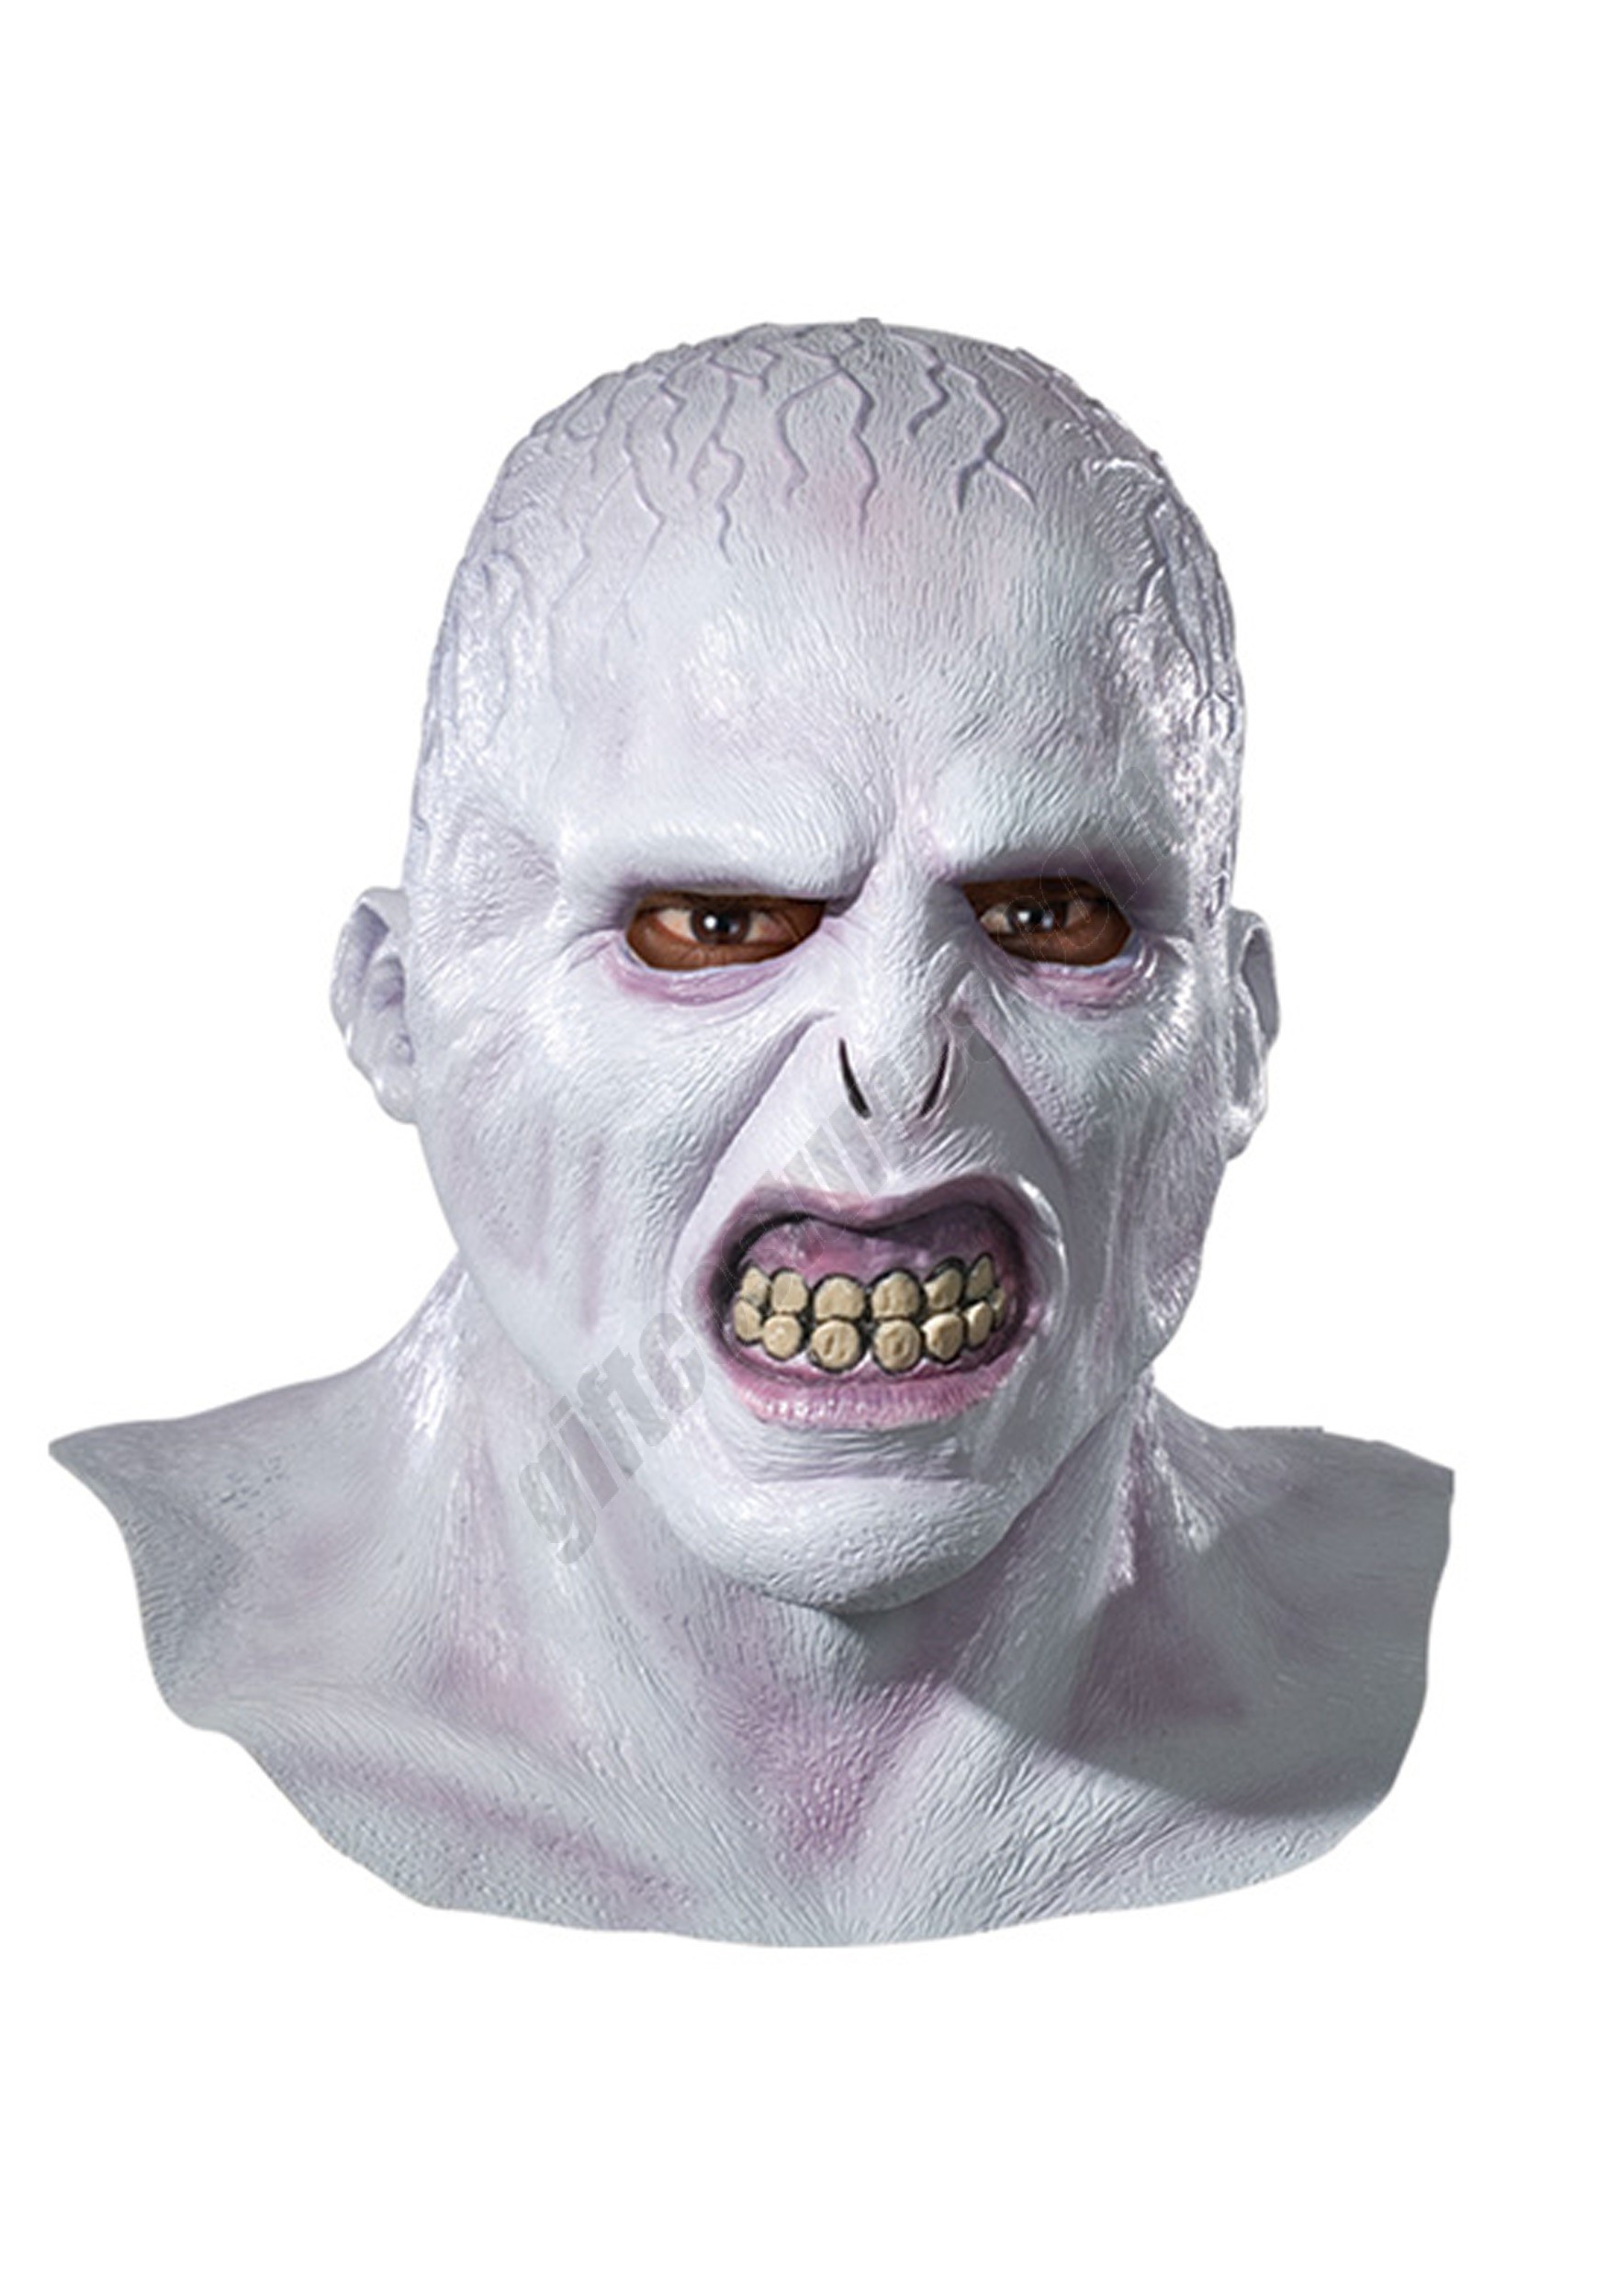 Voldemort Mask Promotions - Voldemort Mask Promotions